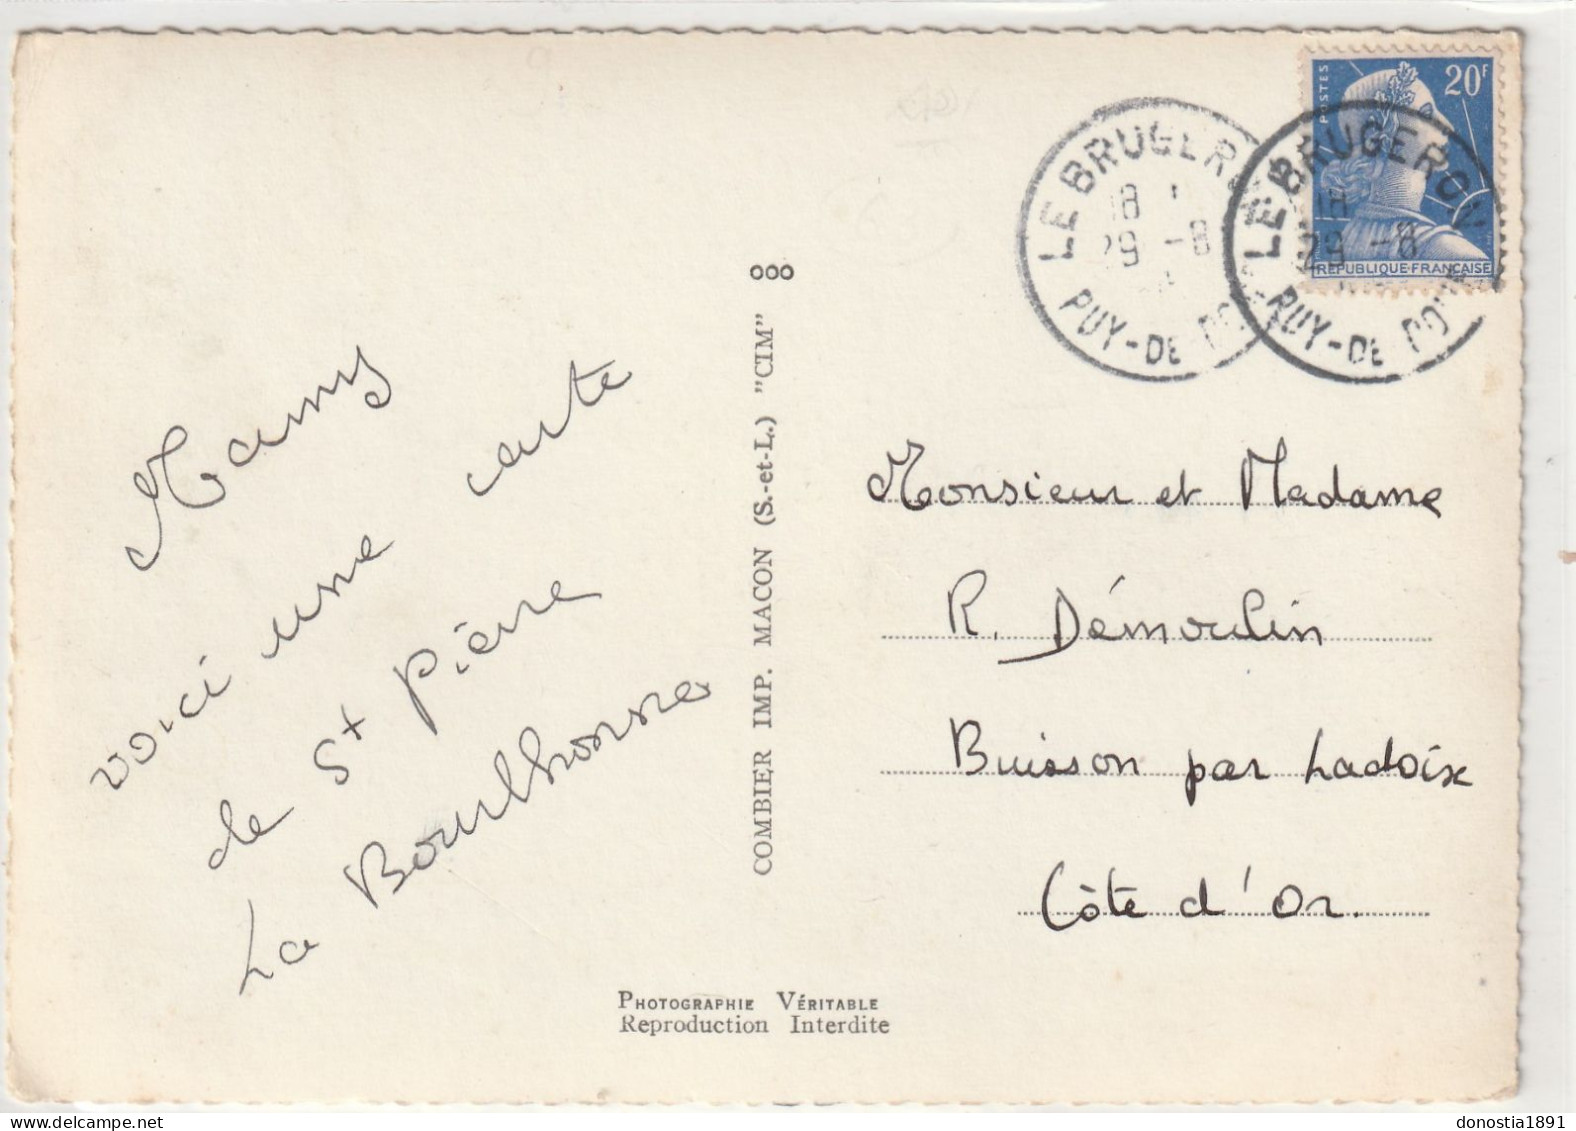 Souvenir De ST-PIERRE-la-BOURLONNE (63) Divers Aspects, Blason 105x150 Dentelée Glacée - Timbrée 1958 - Other & Unclassified